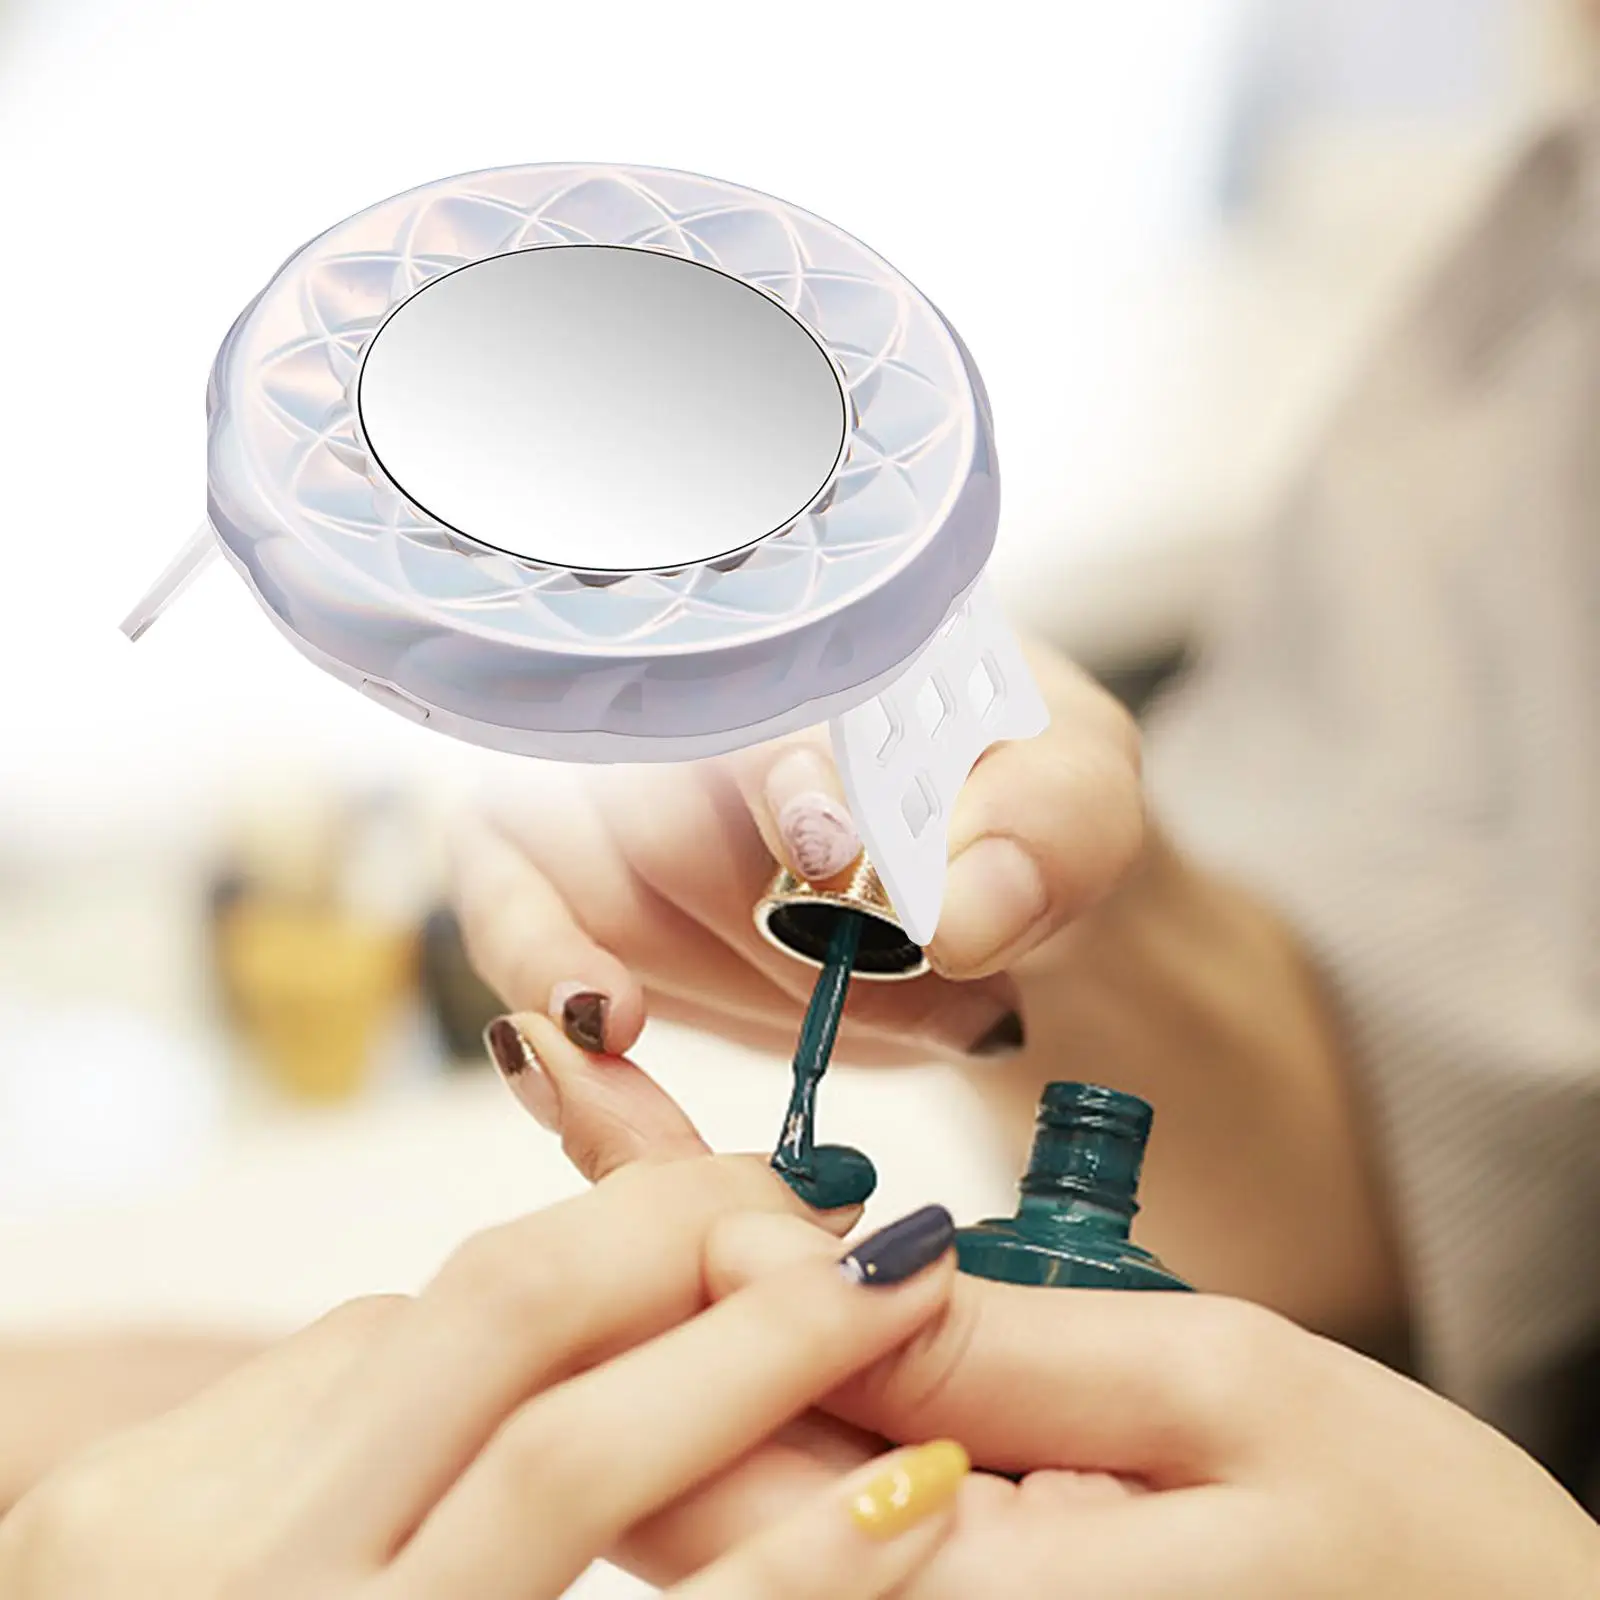 18Pcs LED Nail Drying Lamp with Makeup Mirror Lamp UV for Nail Art